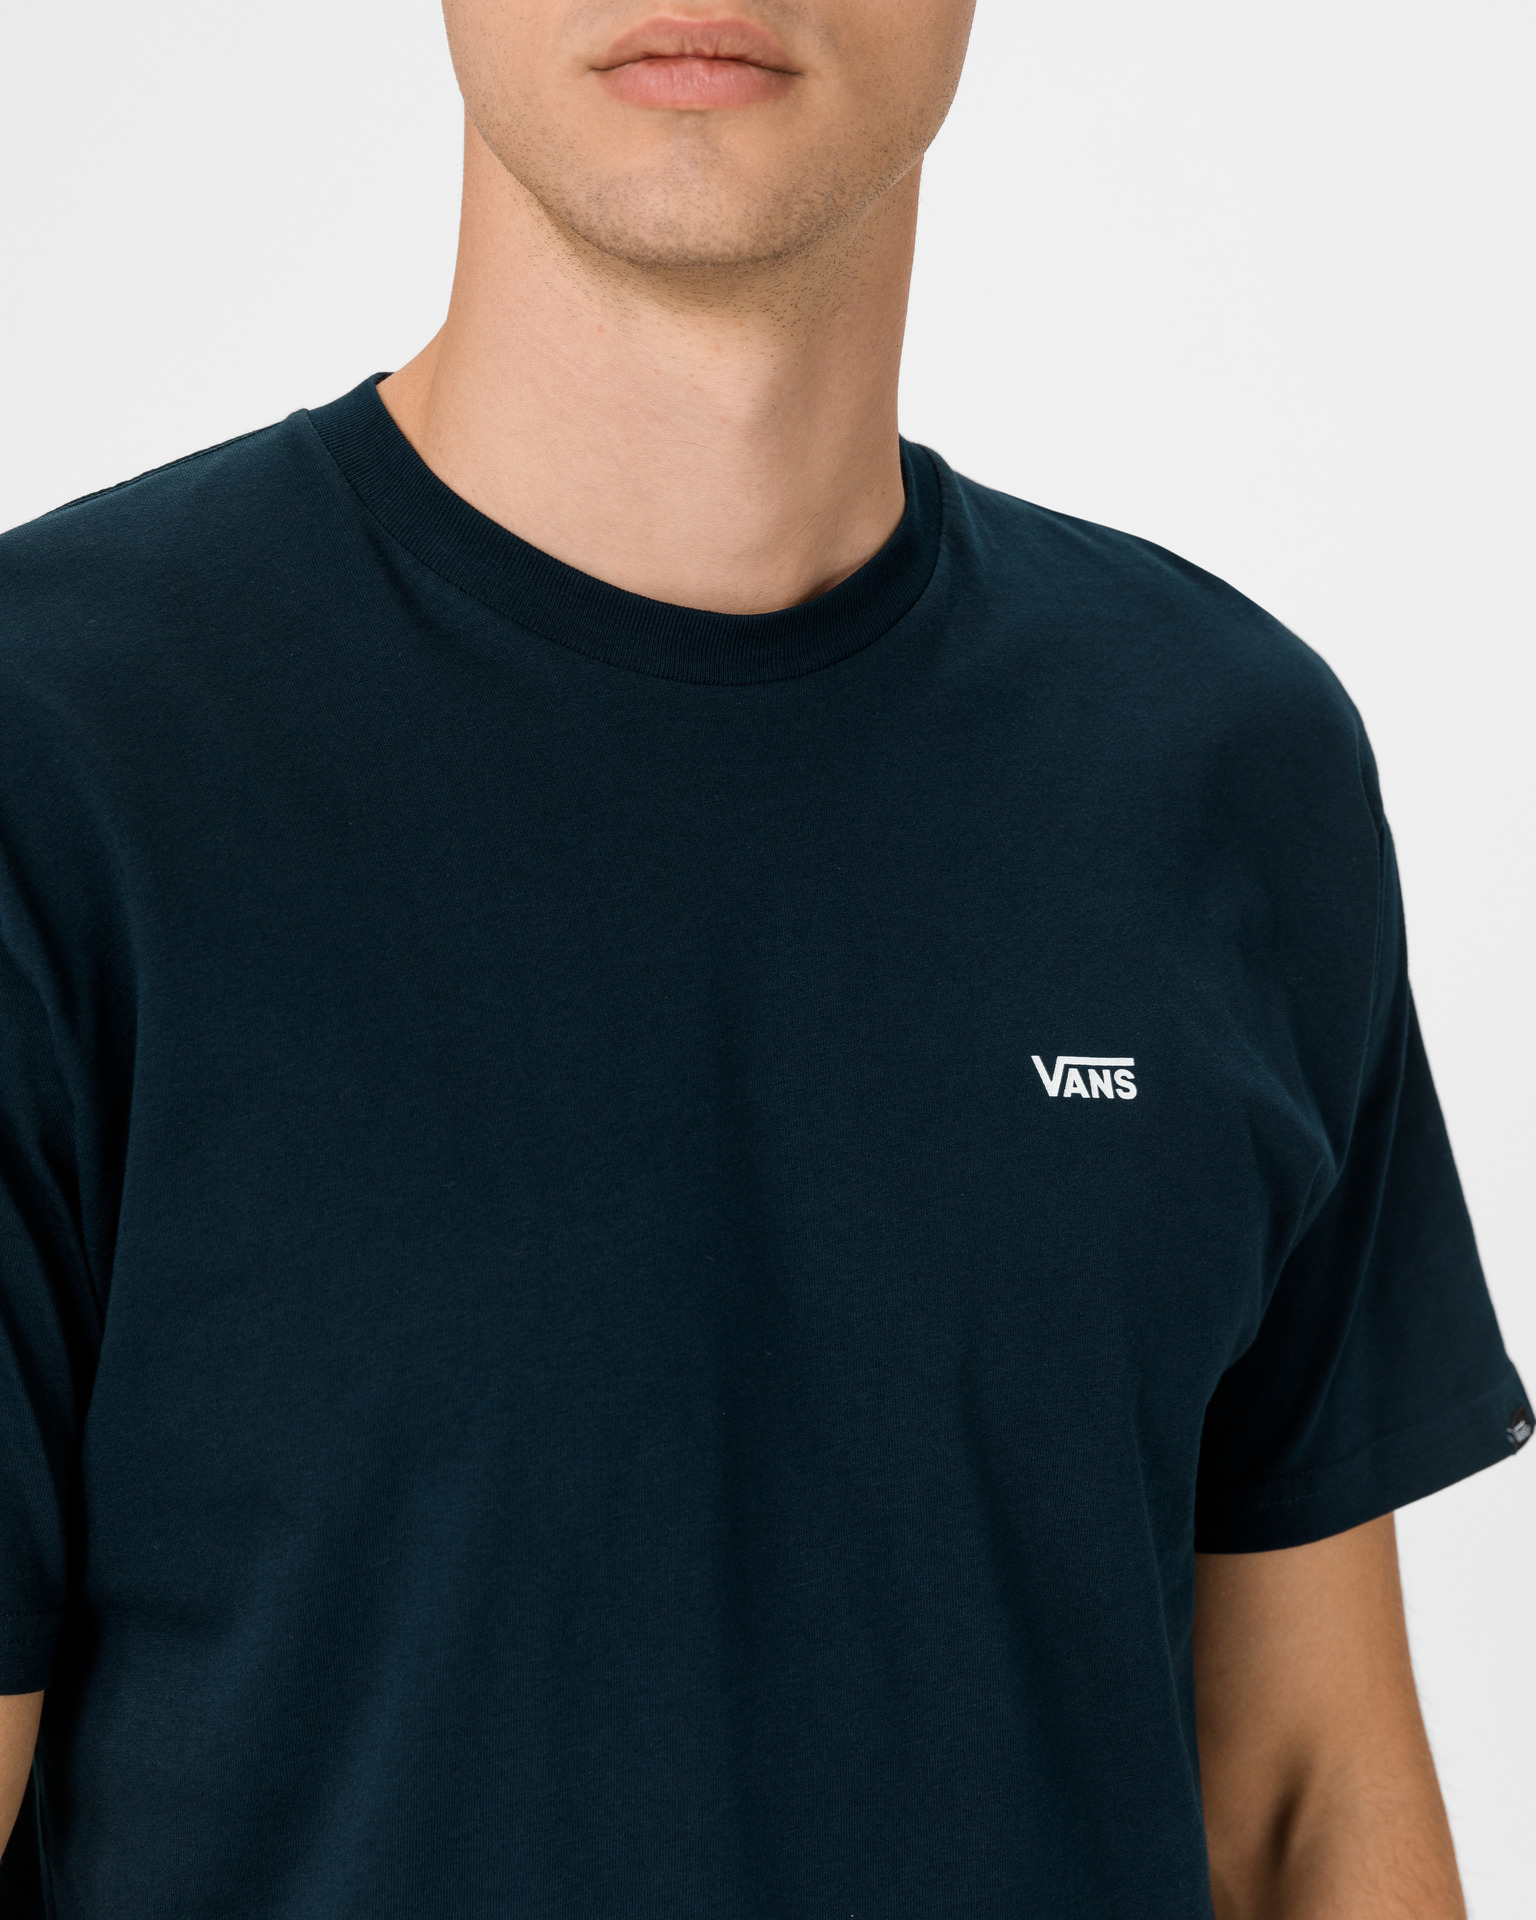 - Left Logo Chest Vans T-shirt